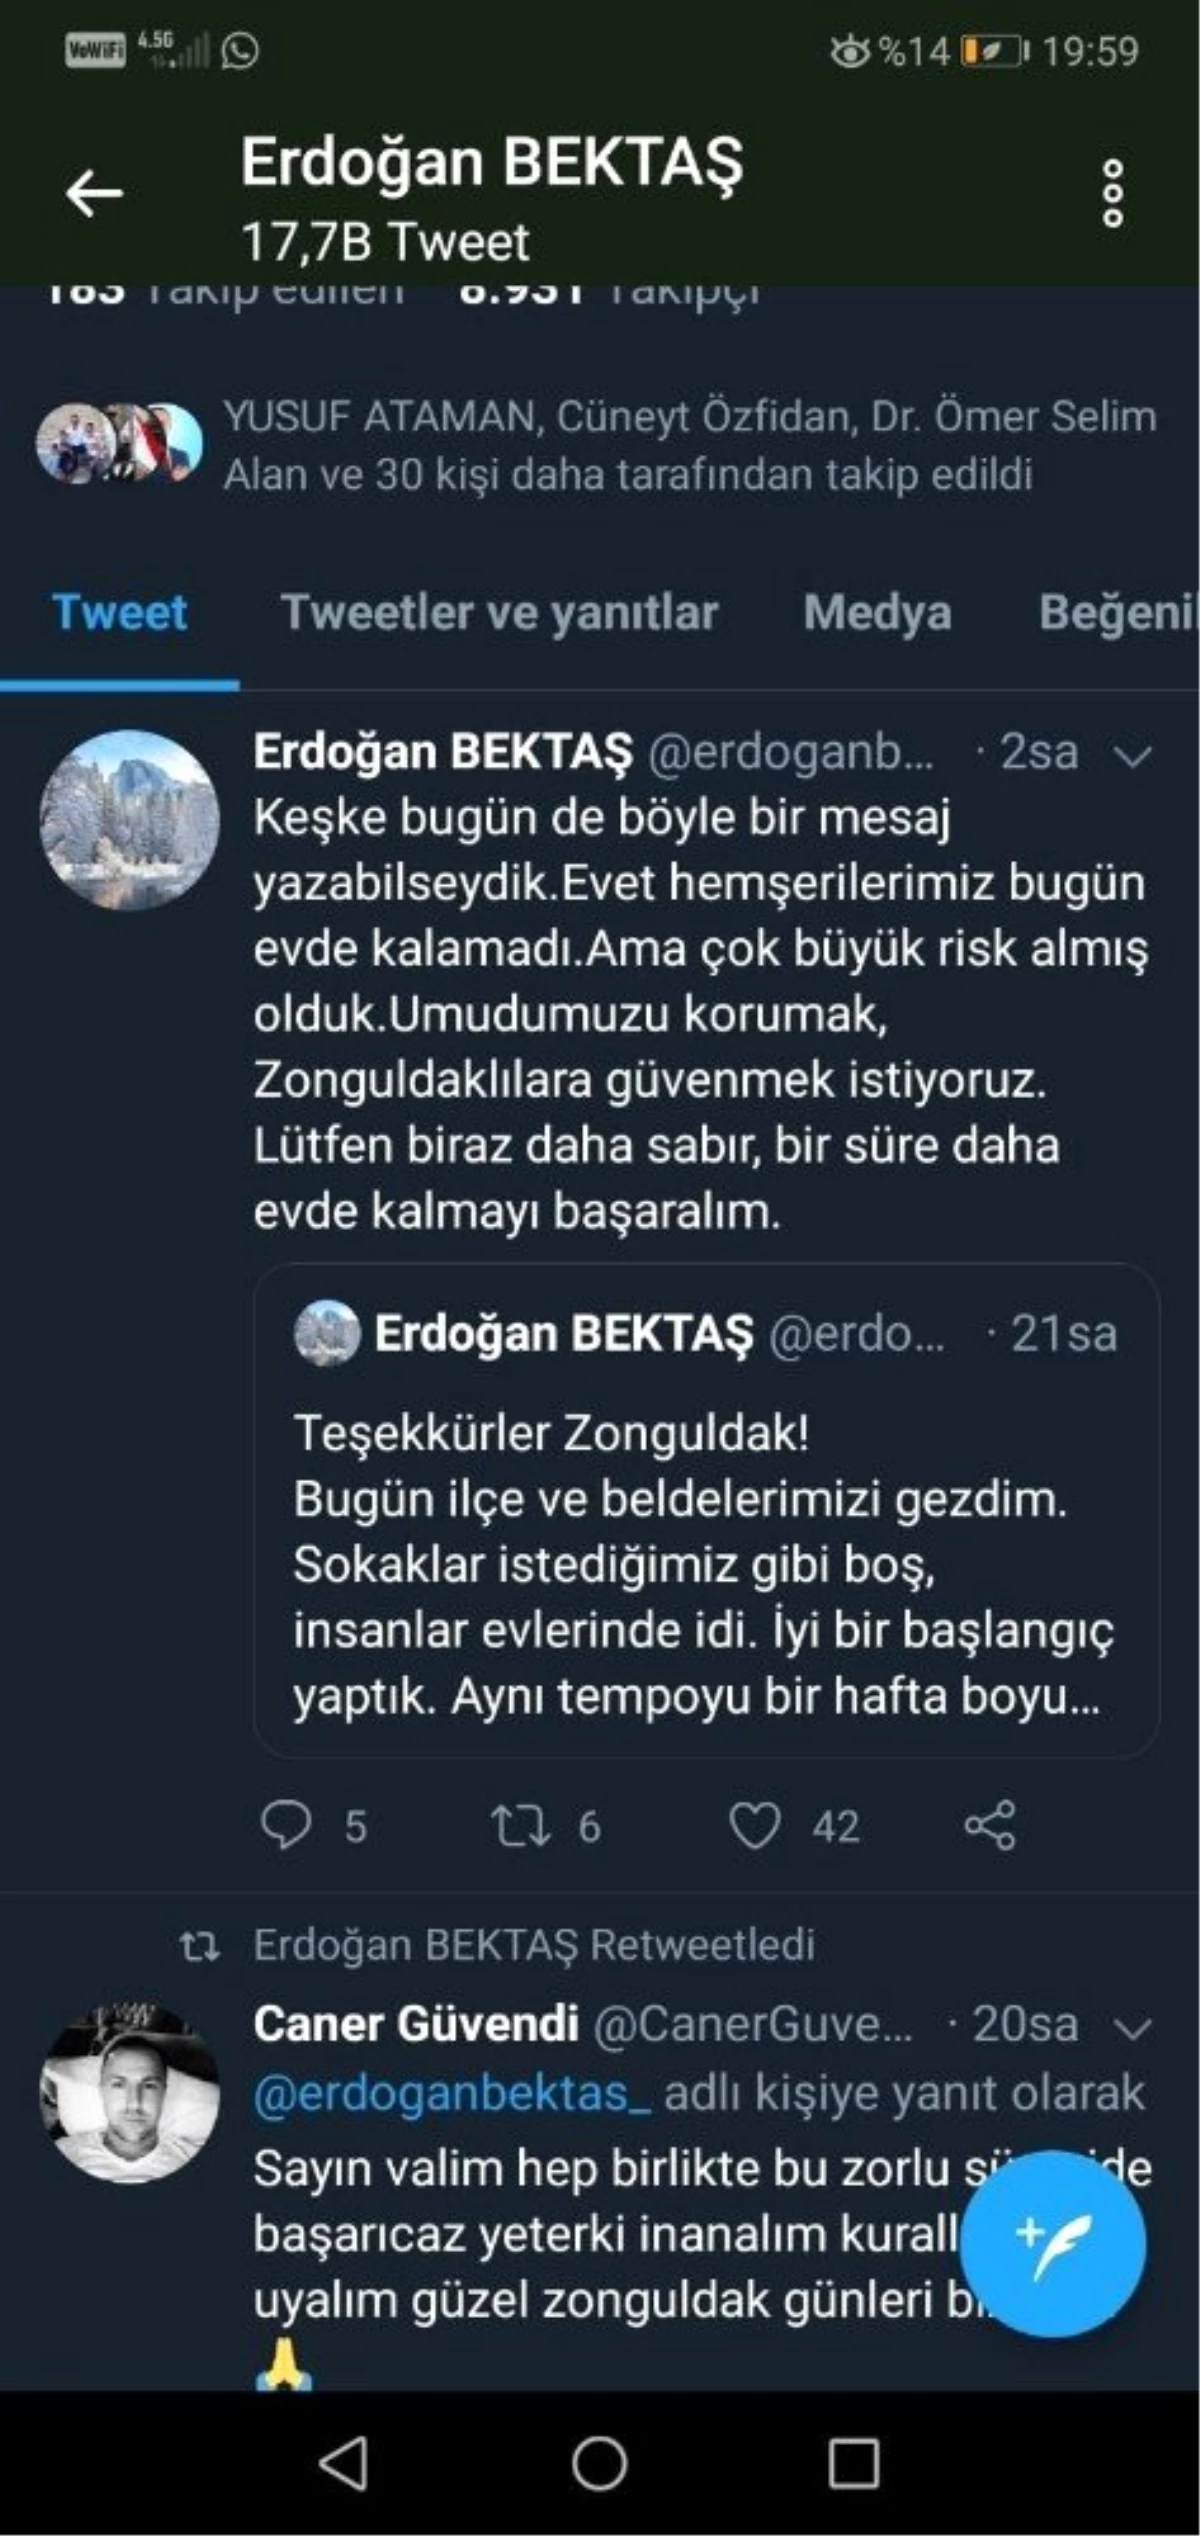 Vali Bektaş, "Umudumuzu korumak, Zonguldaklılara güvenmek istiyoruz"